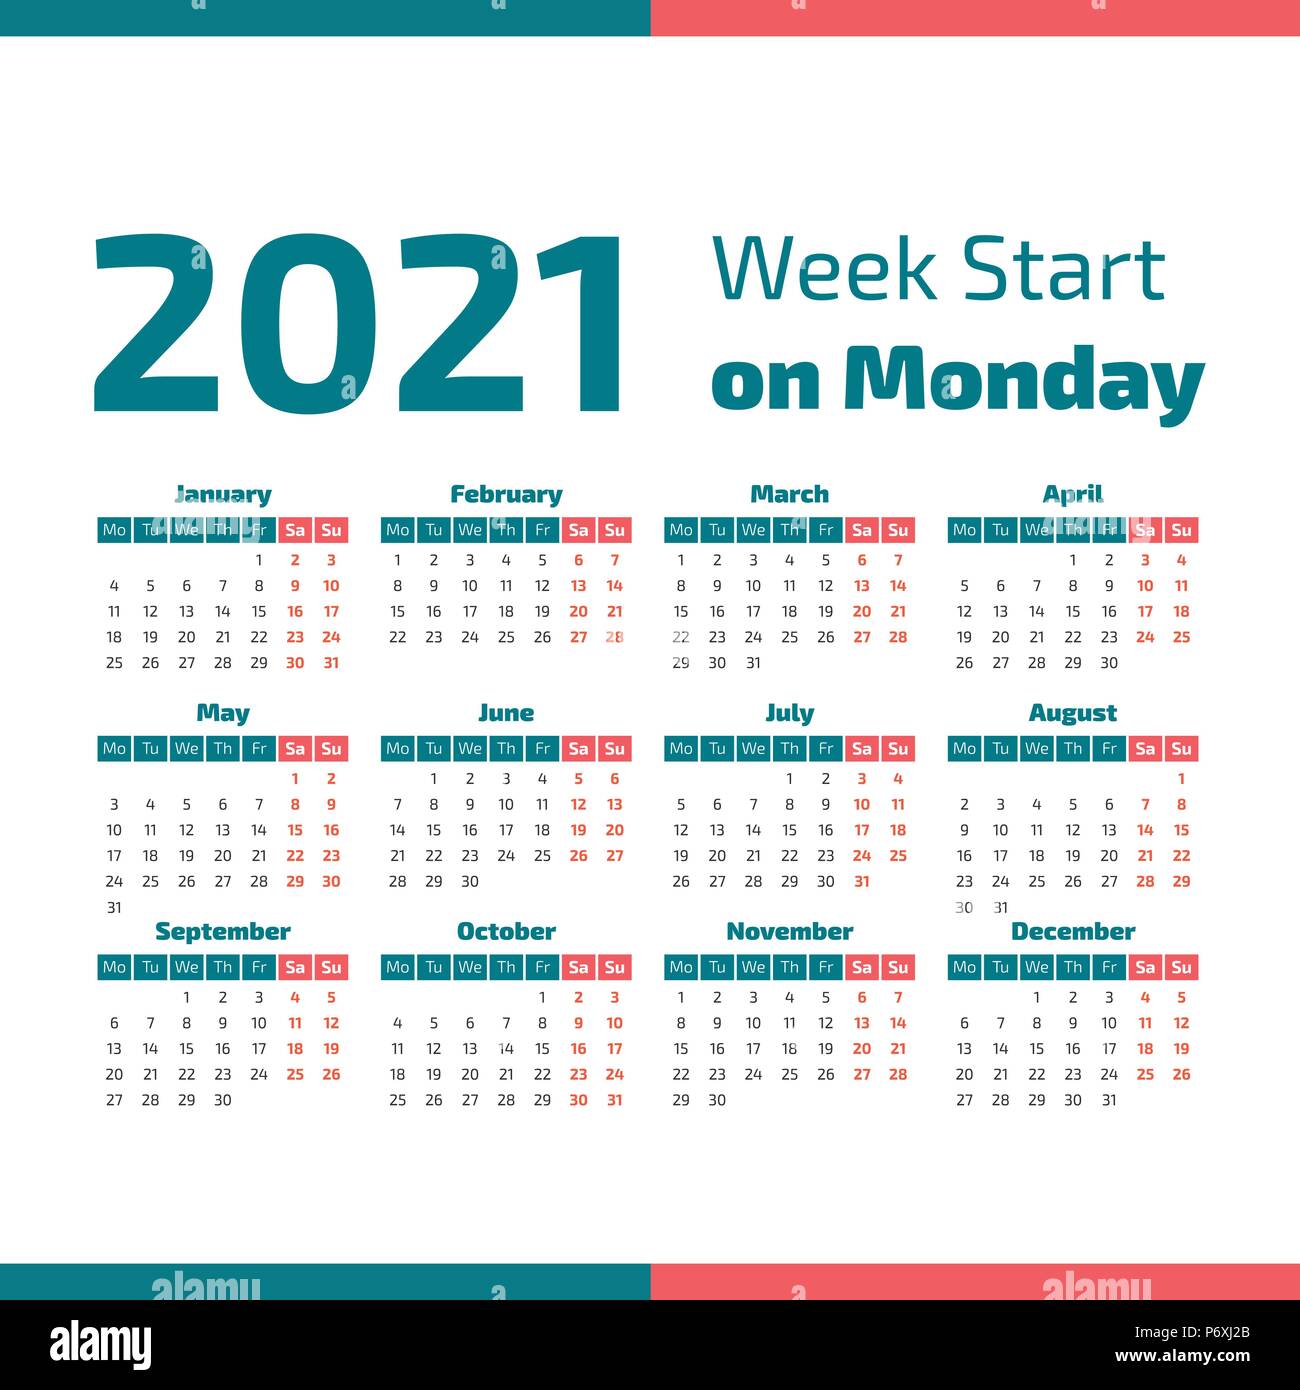 Featured image of post Calendario 2021 Por Semanas Aqu puedes consultar todos los eventos de cada uno de los d as s mplemente pulsando sobre la fecha correspondiente